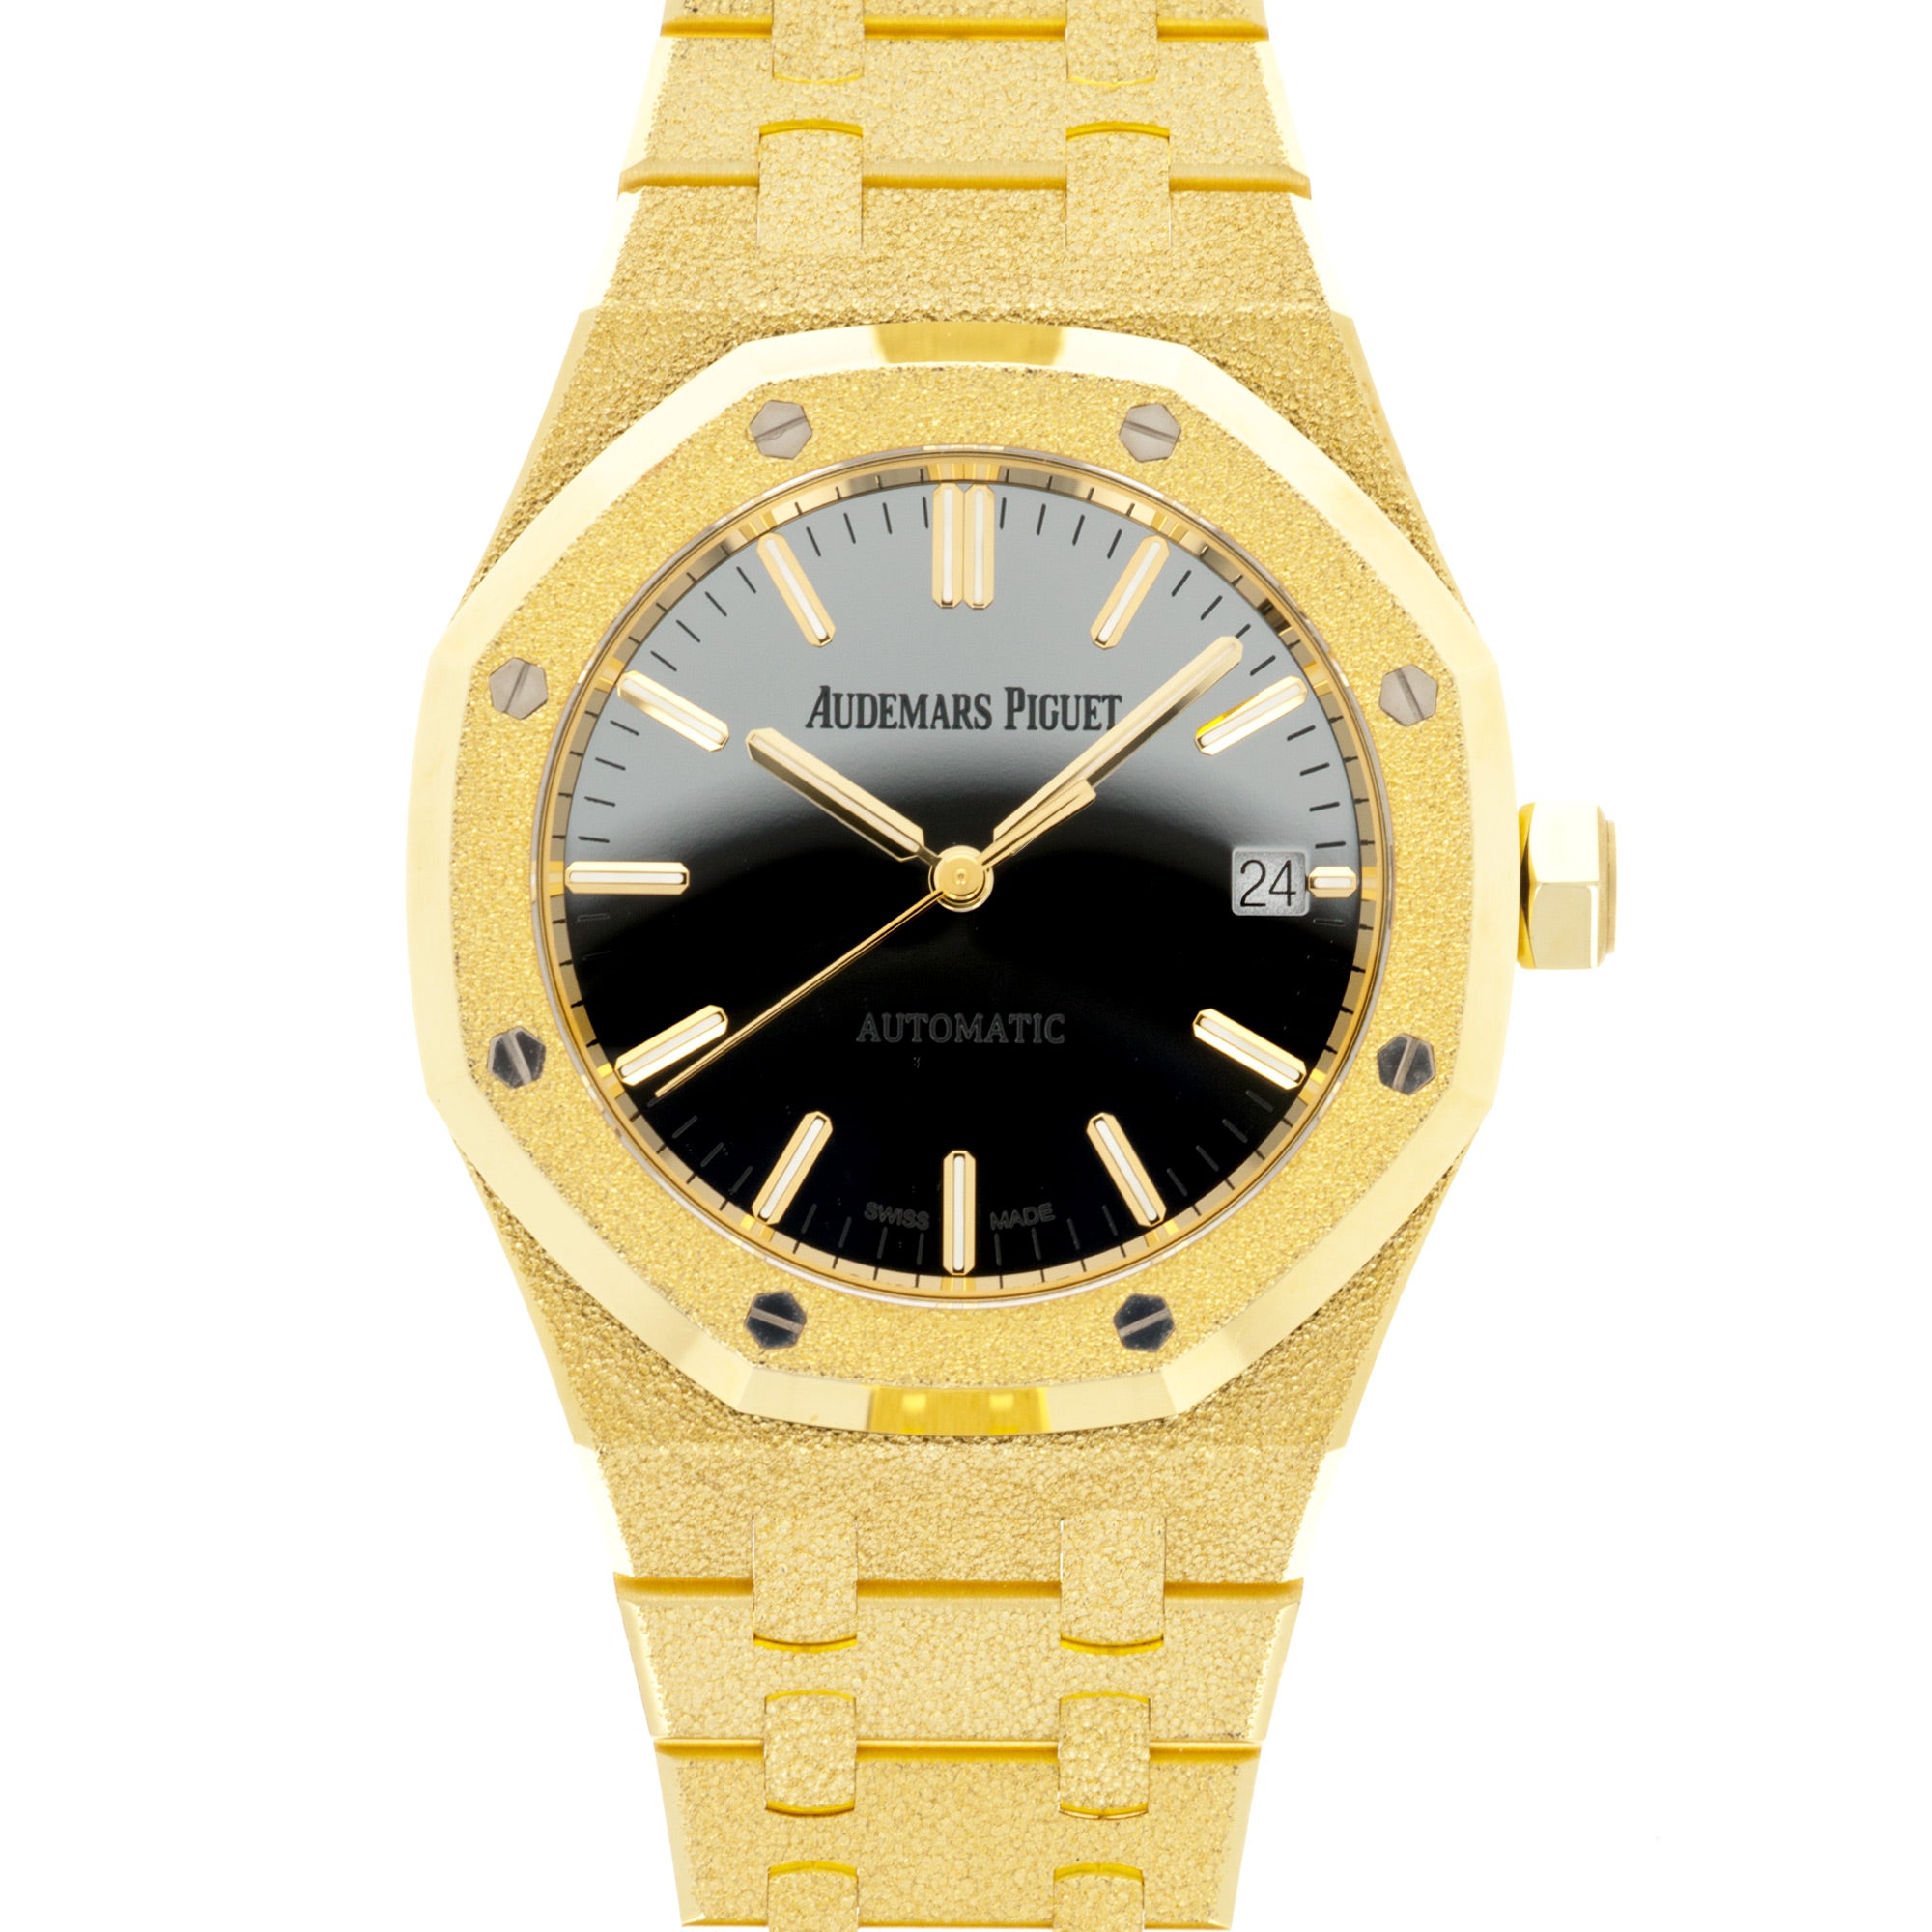 Audemars Piguet - Audemars Piguet Frosted Yellow Gold Carolina Bucci Royal Oak Ref. 15454 - The Keystone Watches